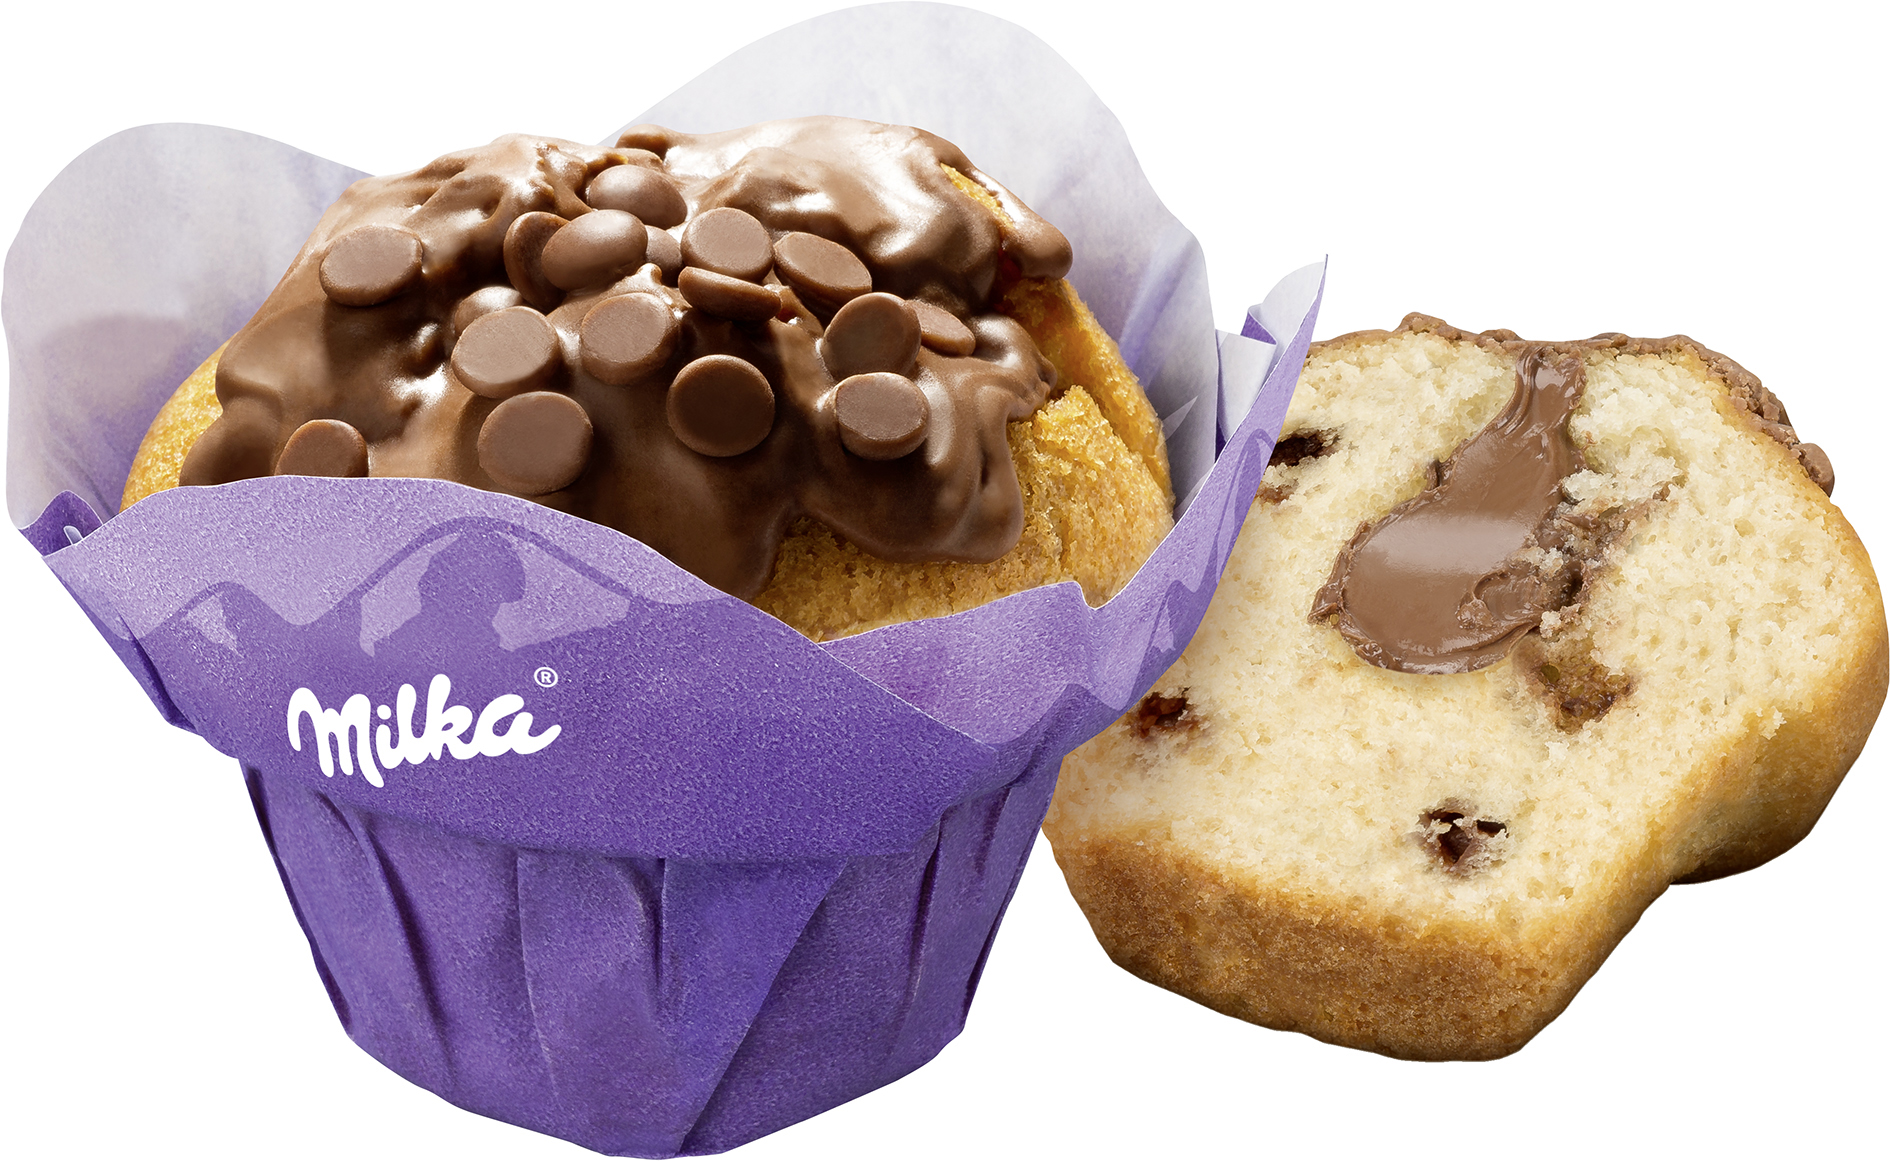 Muffin mit Milka gefüllt 110g